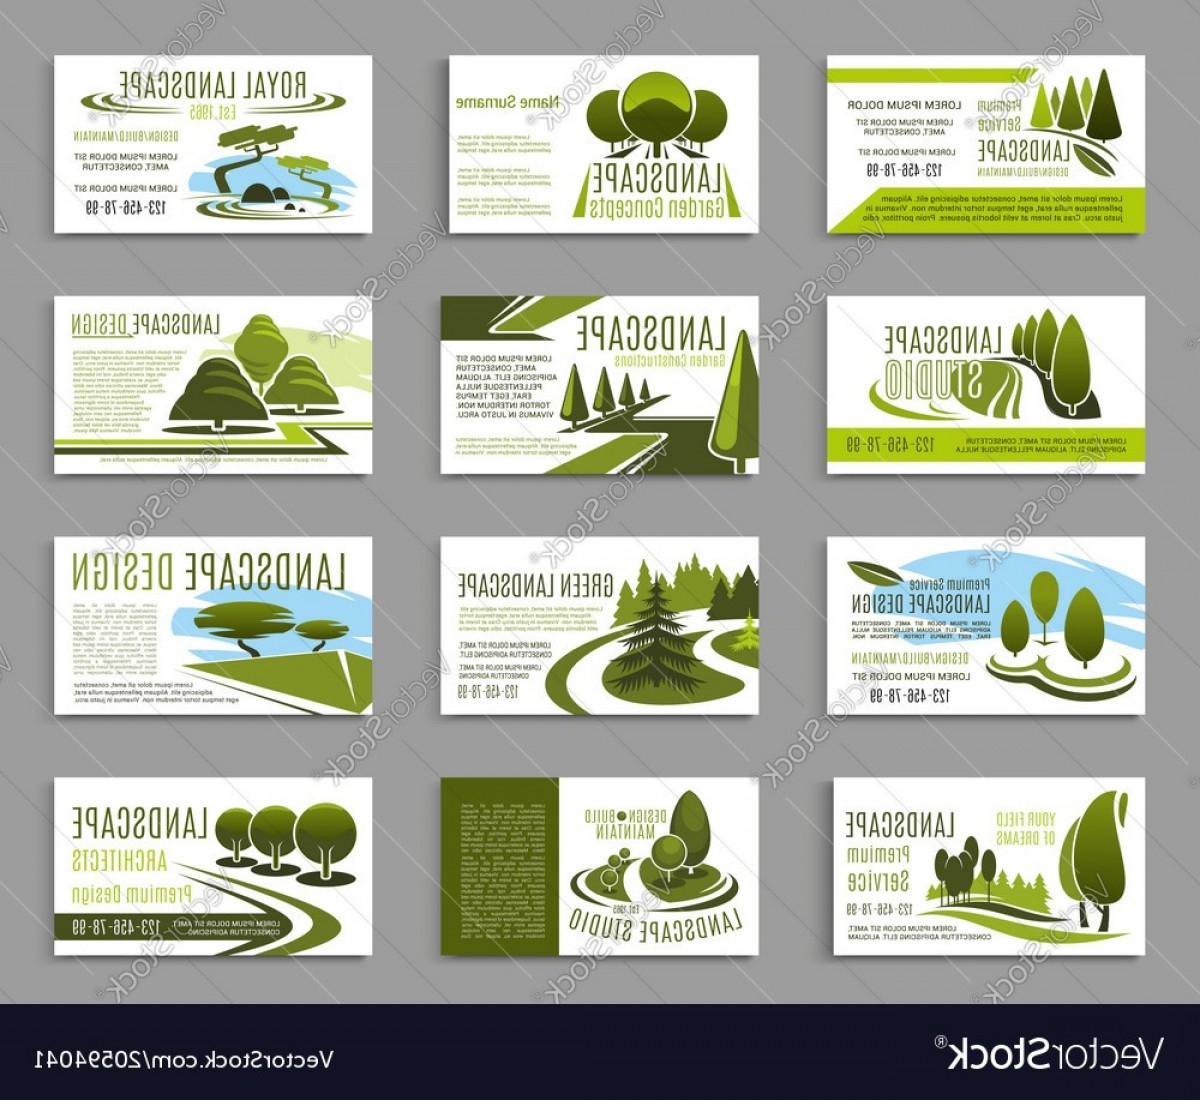 Landscape Design Studio Business Card Template Vector Throughout Landscaping Business Card Template